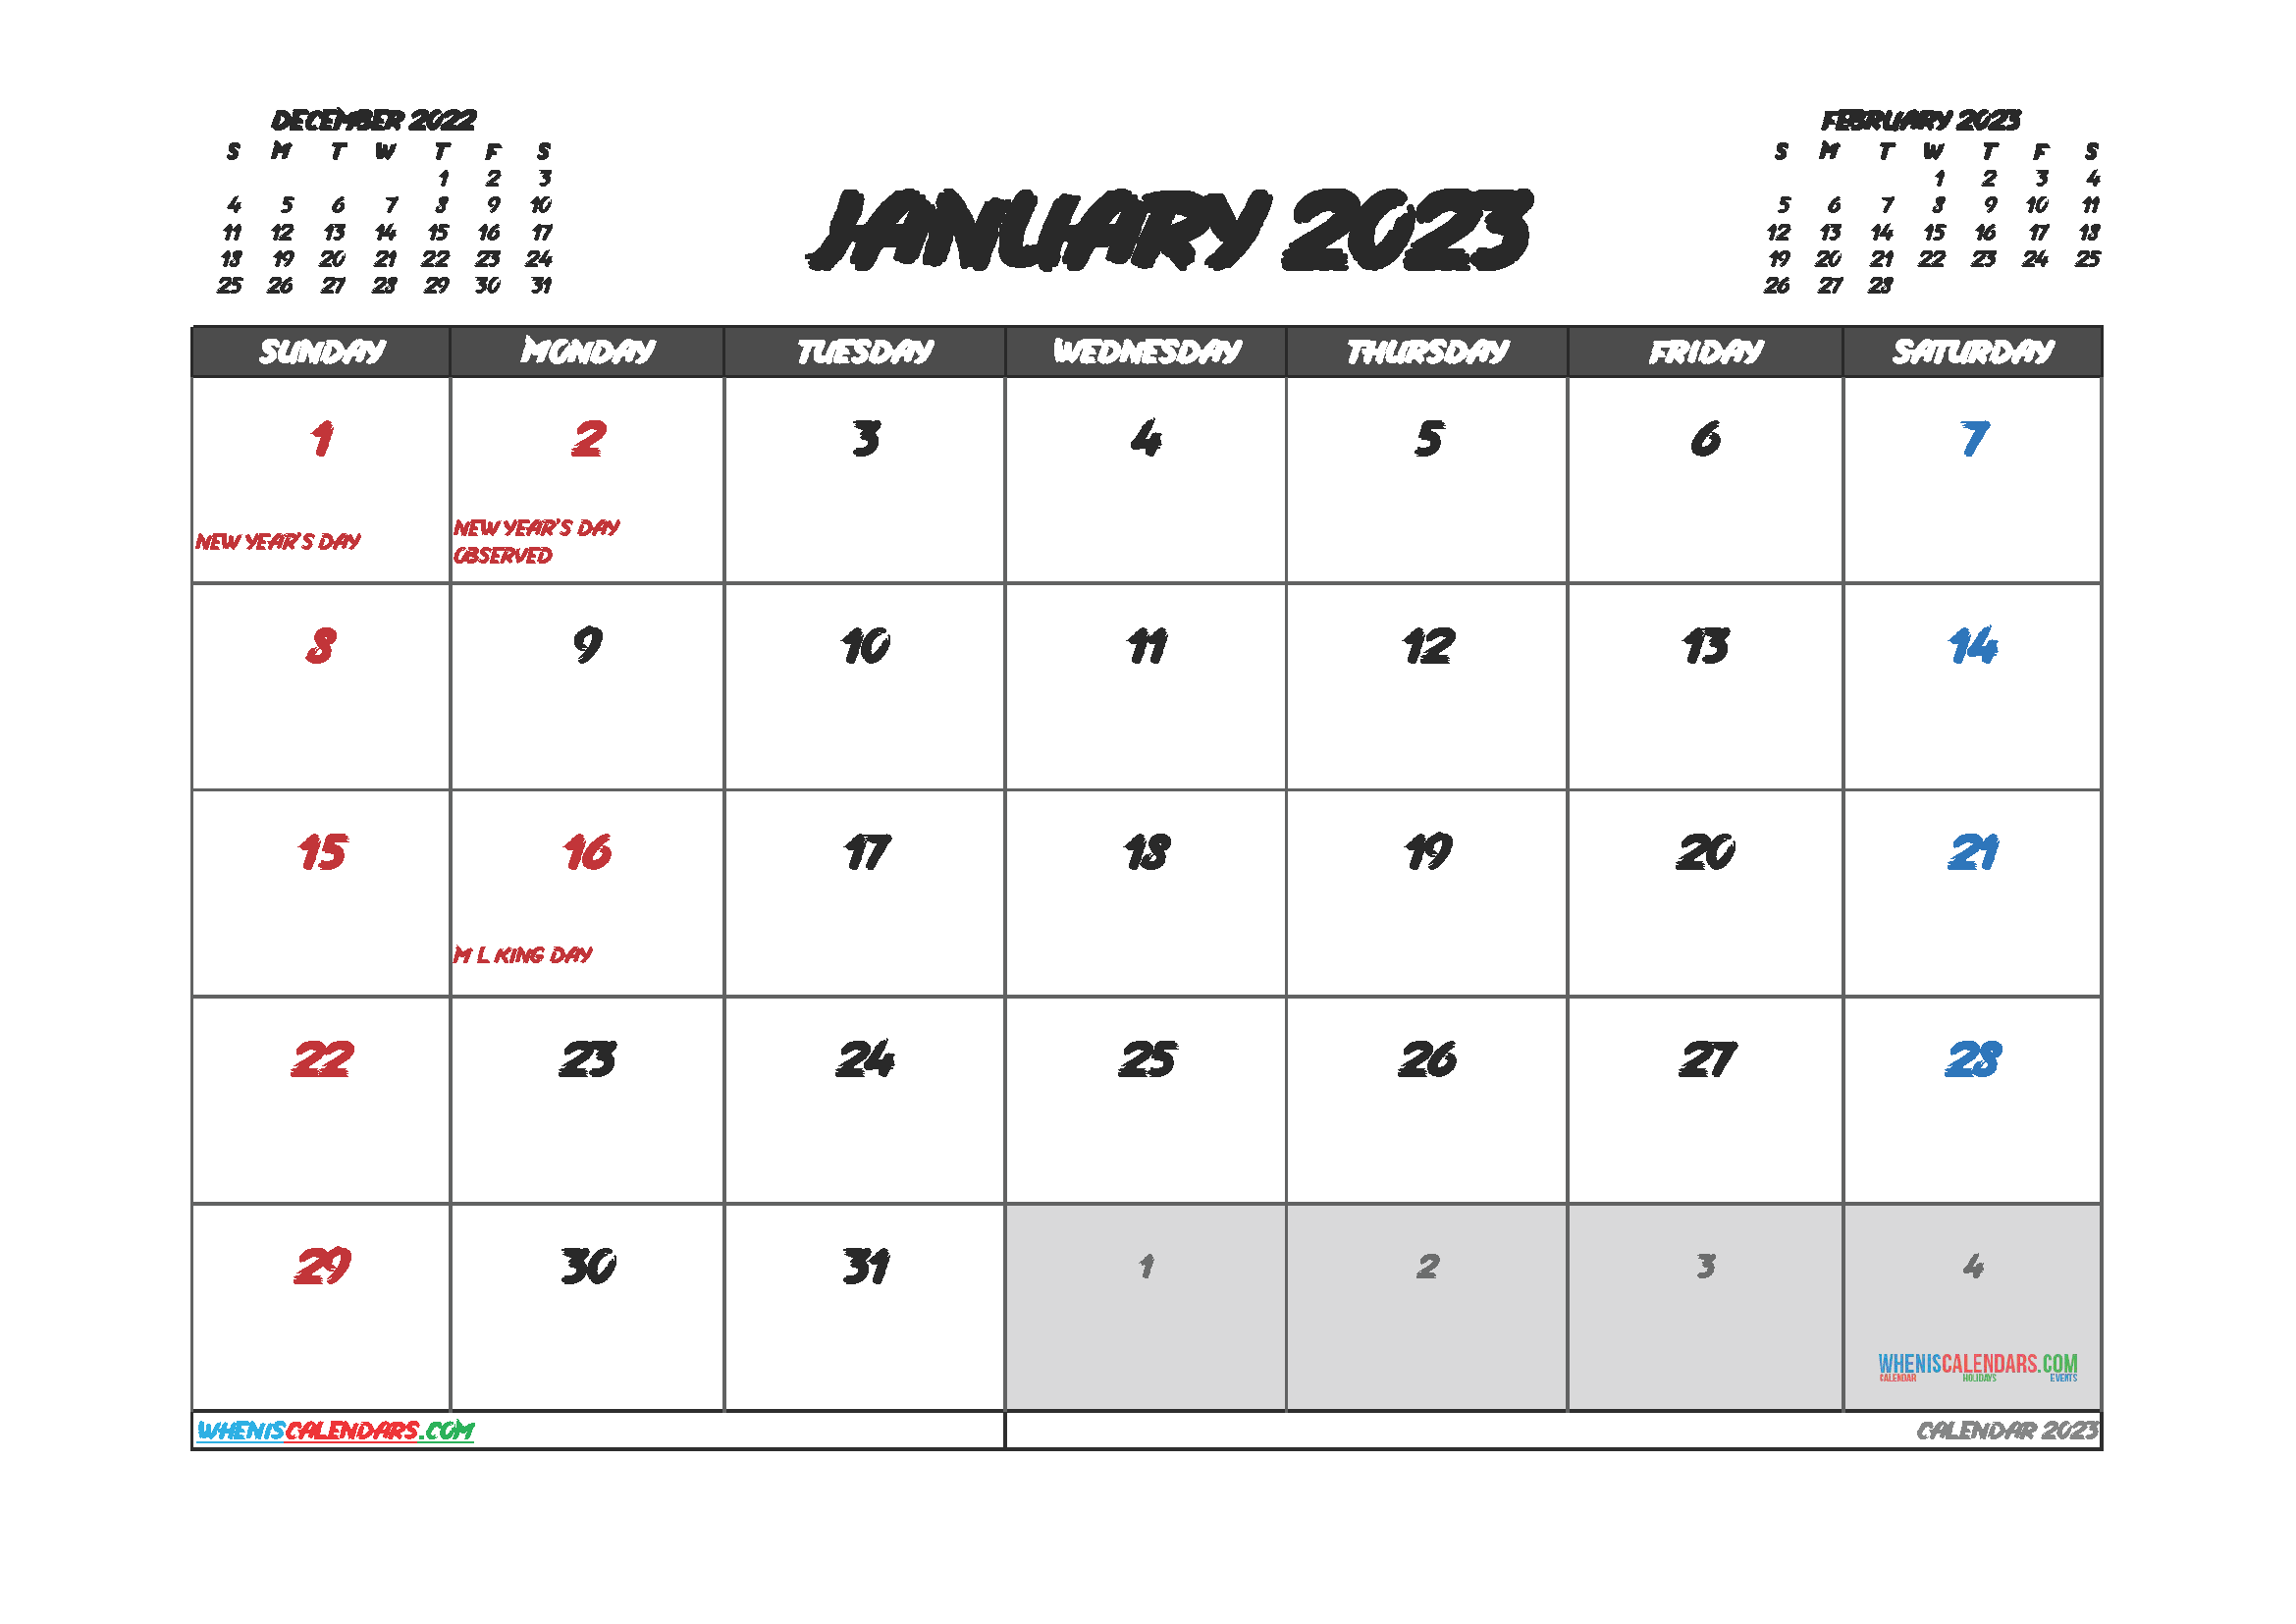 Cute January 2023 Calendar